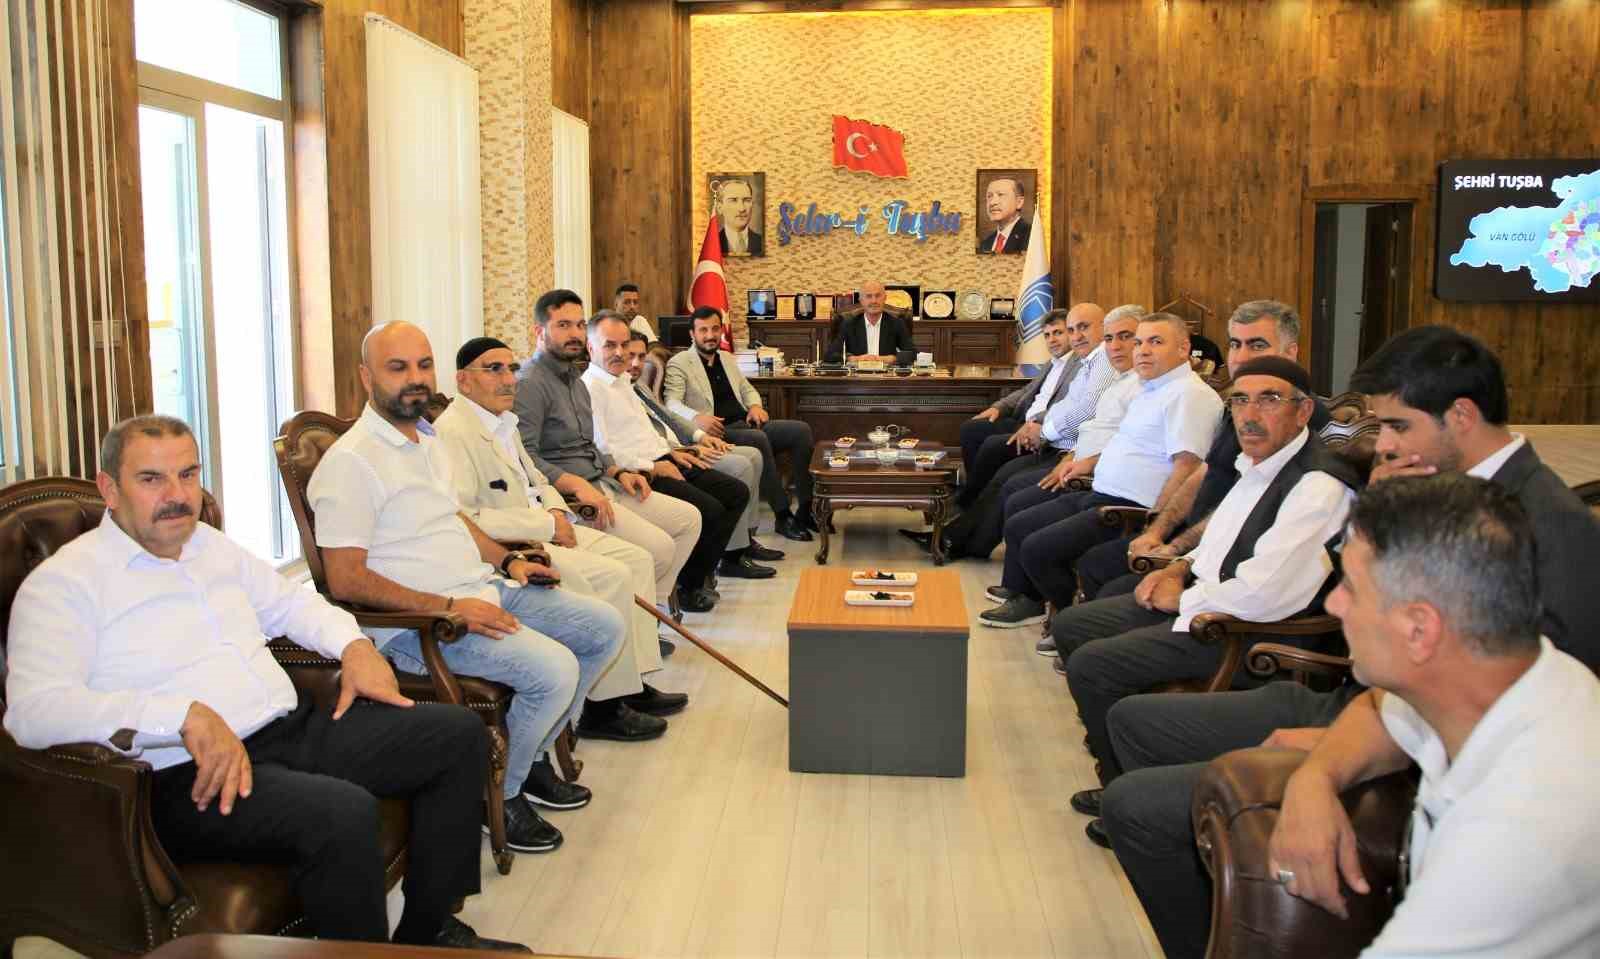 Bağcılar Belediye Başkanı Özdemir’den Tuşba Belediye Başkanı Akman’a ziyaret